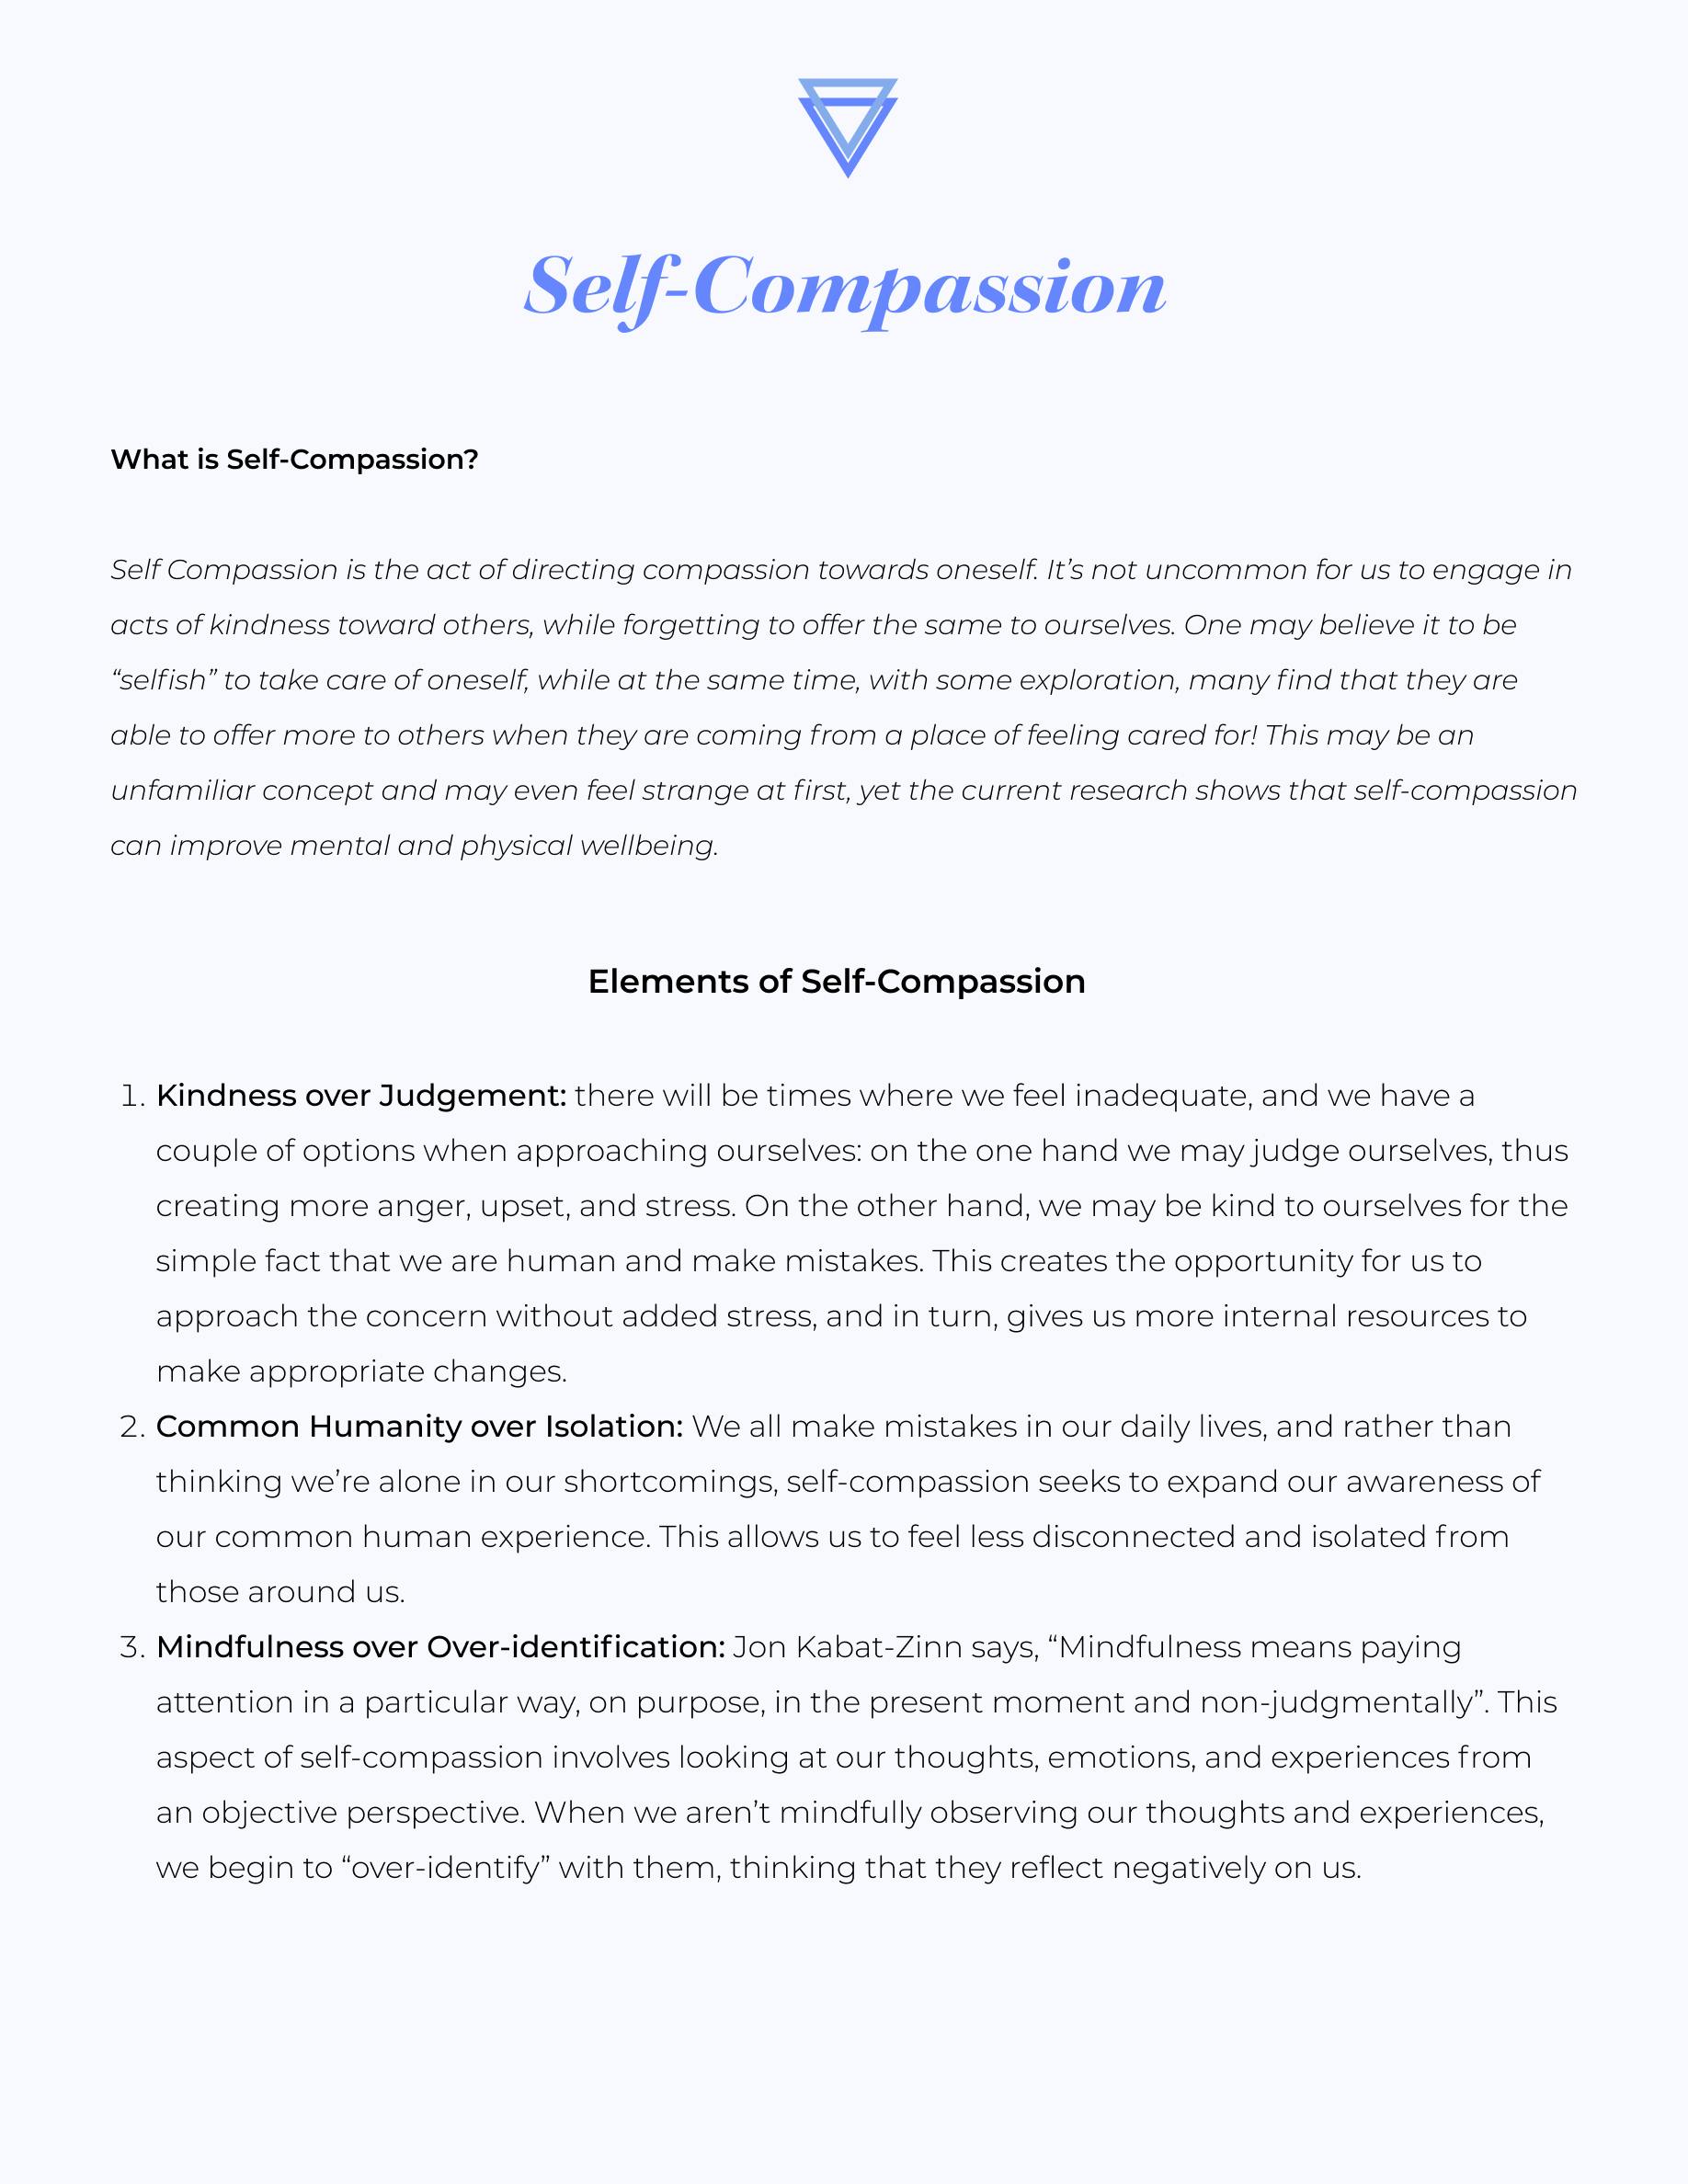 self compassion essay